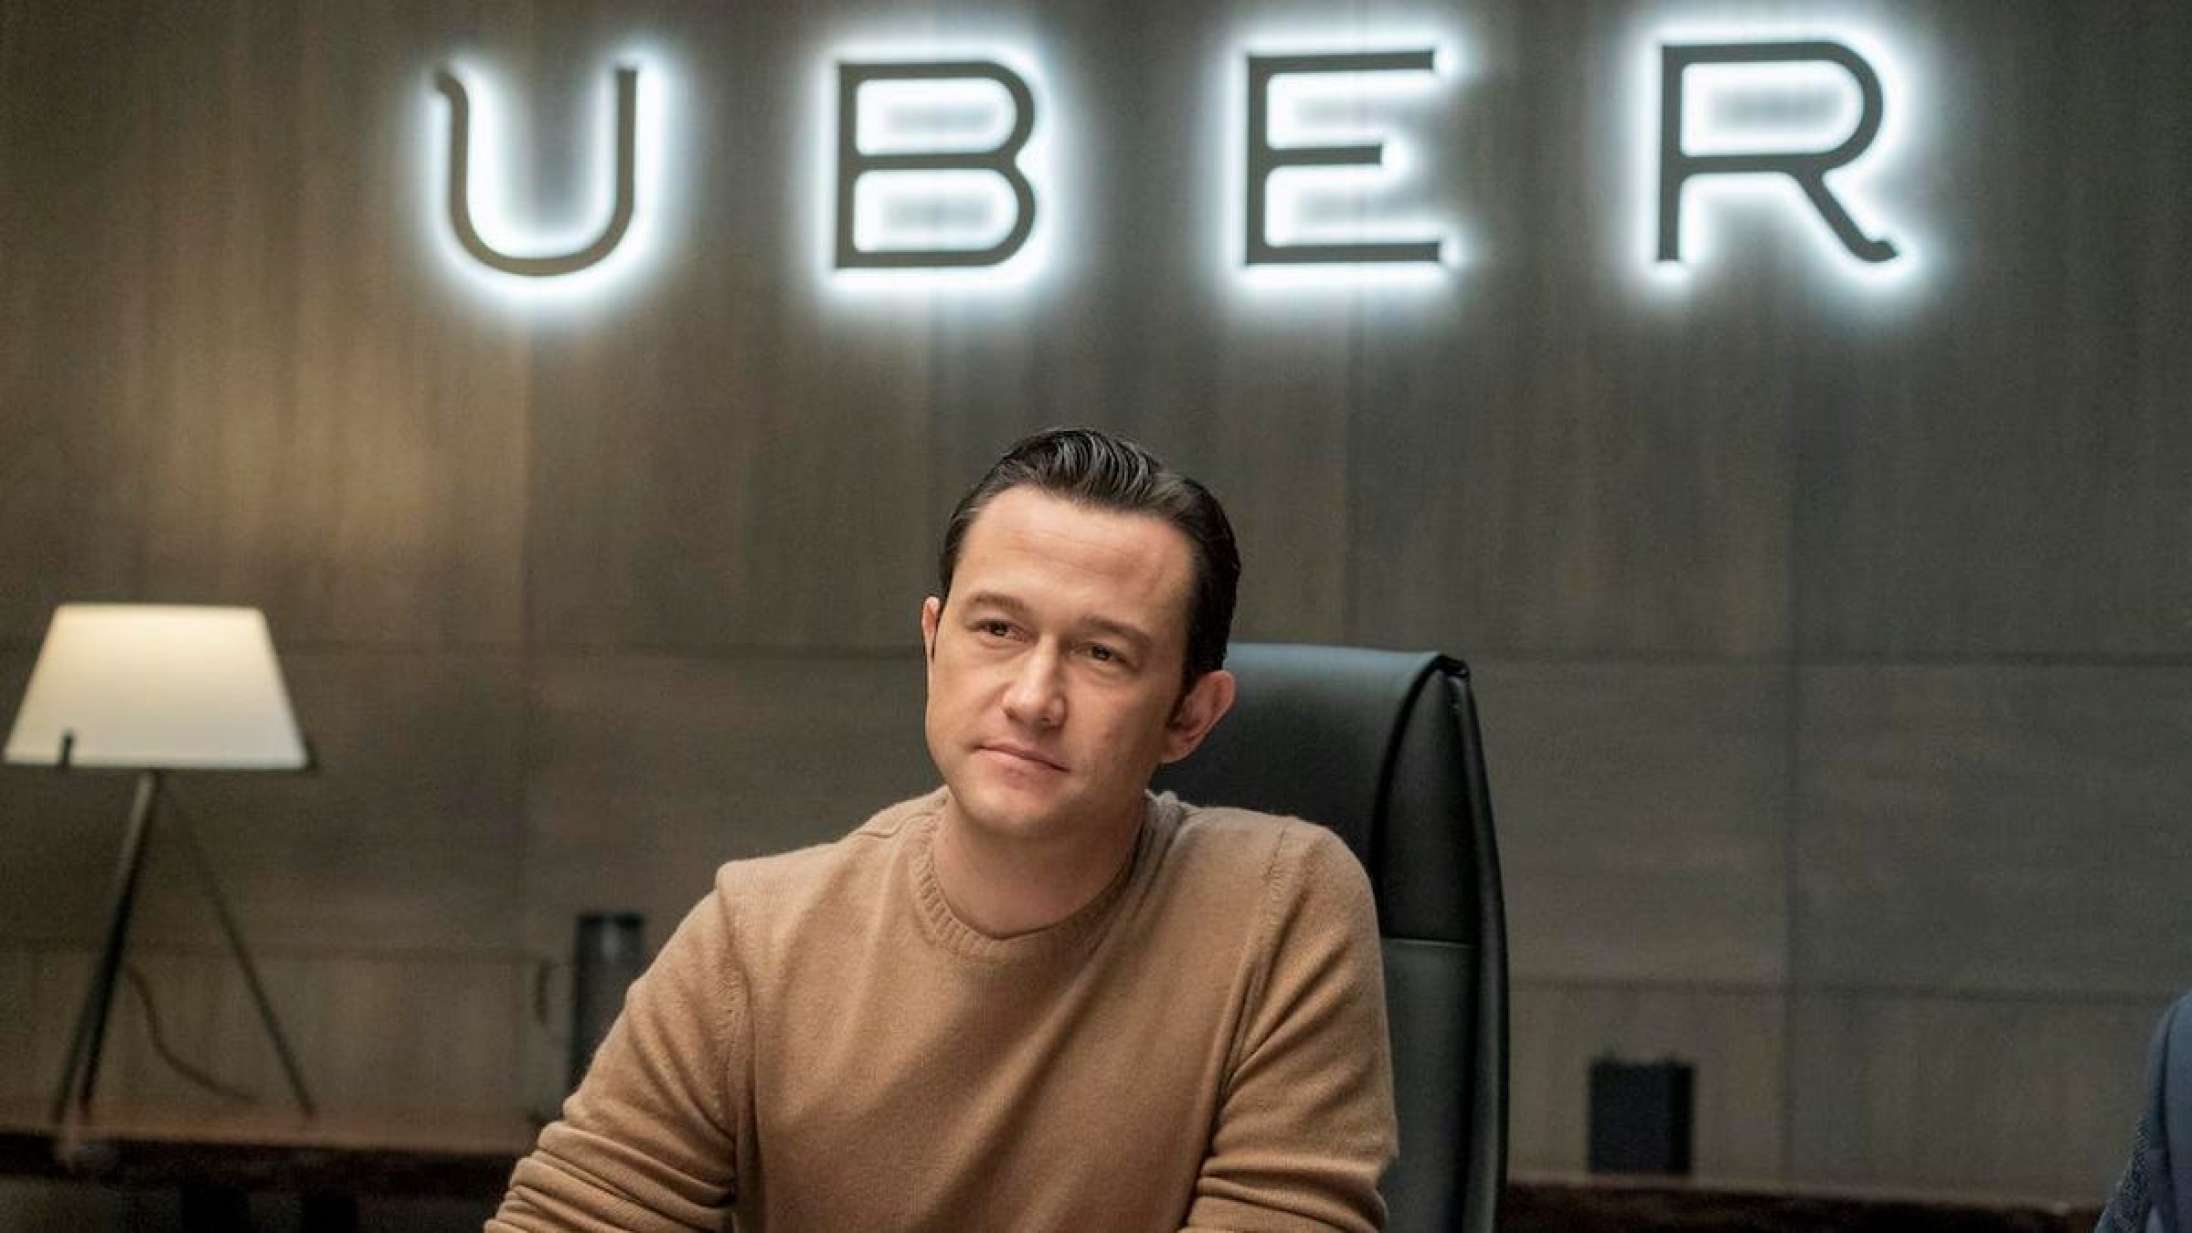 ’Super Pumped: The Battle for Uber’: Joseph Gordon-Levitt er uudholdeligt ukarismatisk som Ubers berygtede CEO